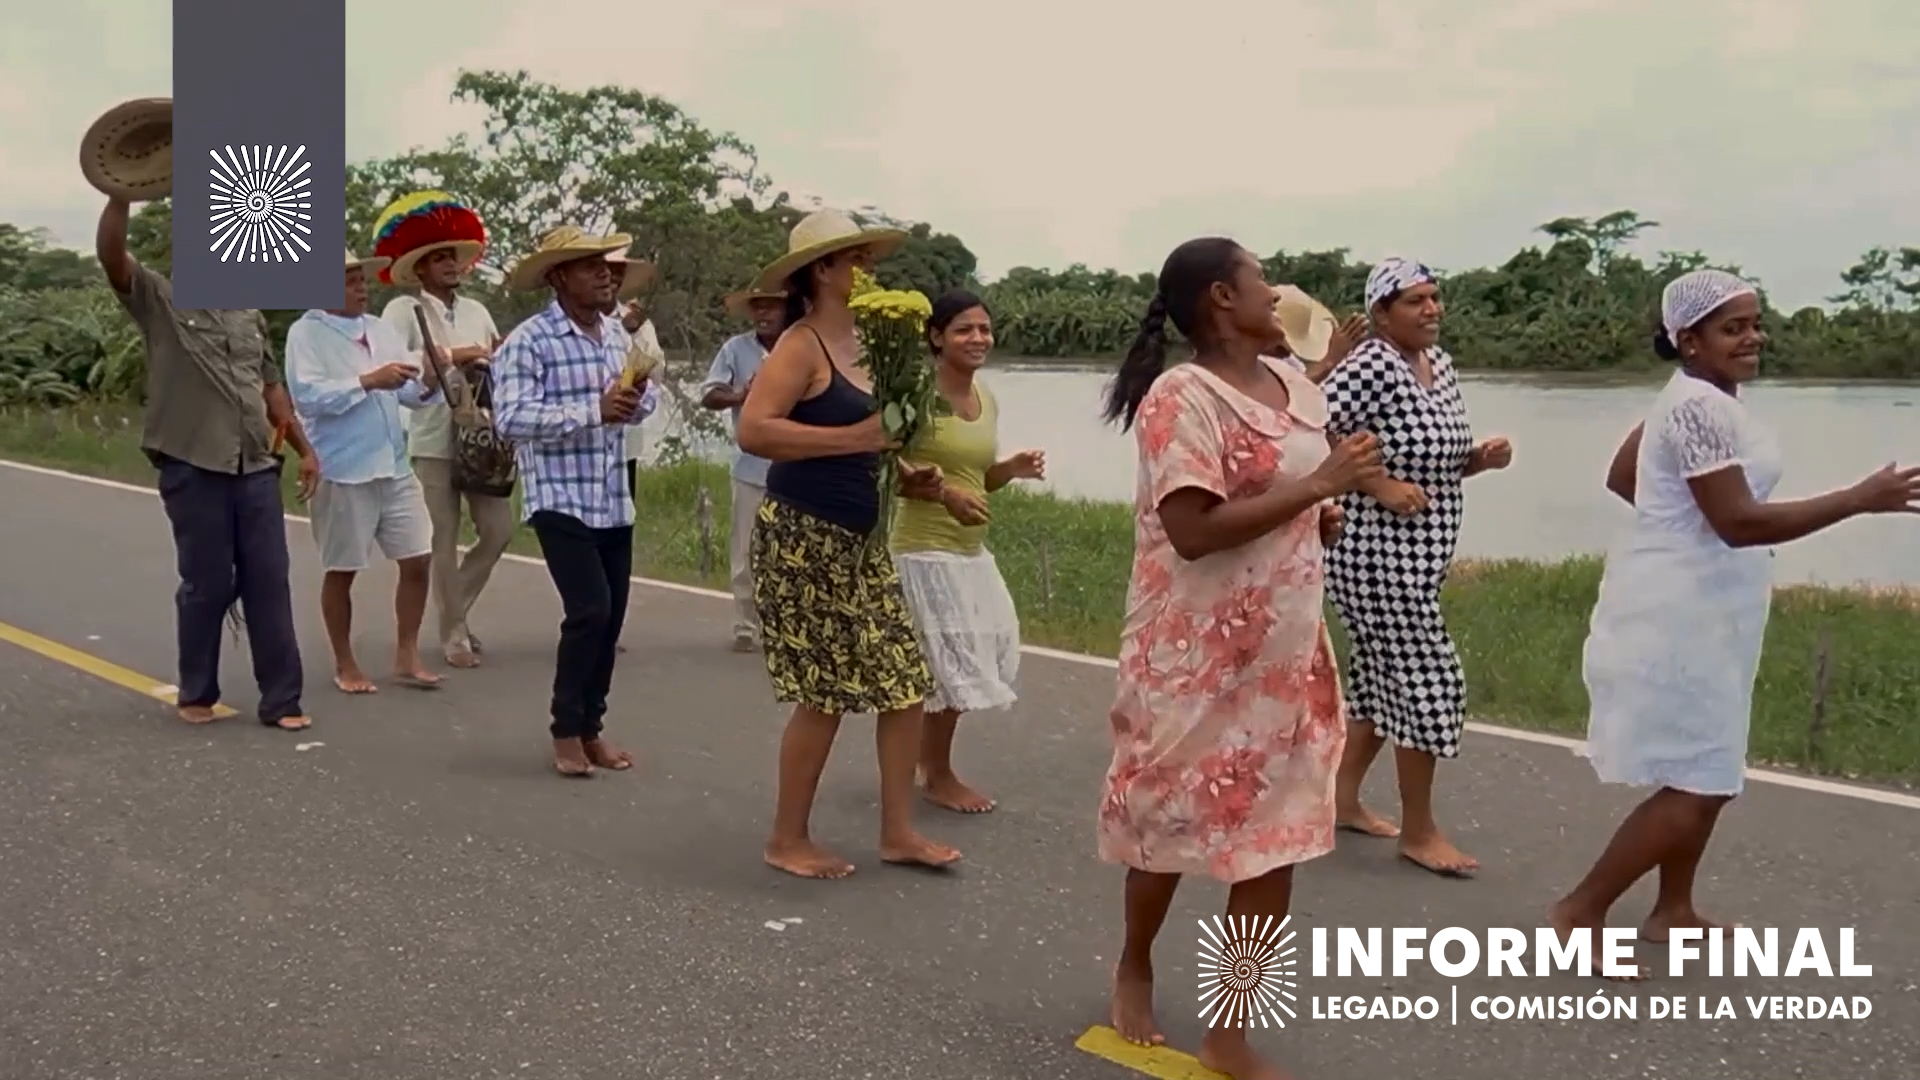 Un grupo de doce hombres y mujeres avanzan descalzos cantando y bailando contentos por una carretera